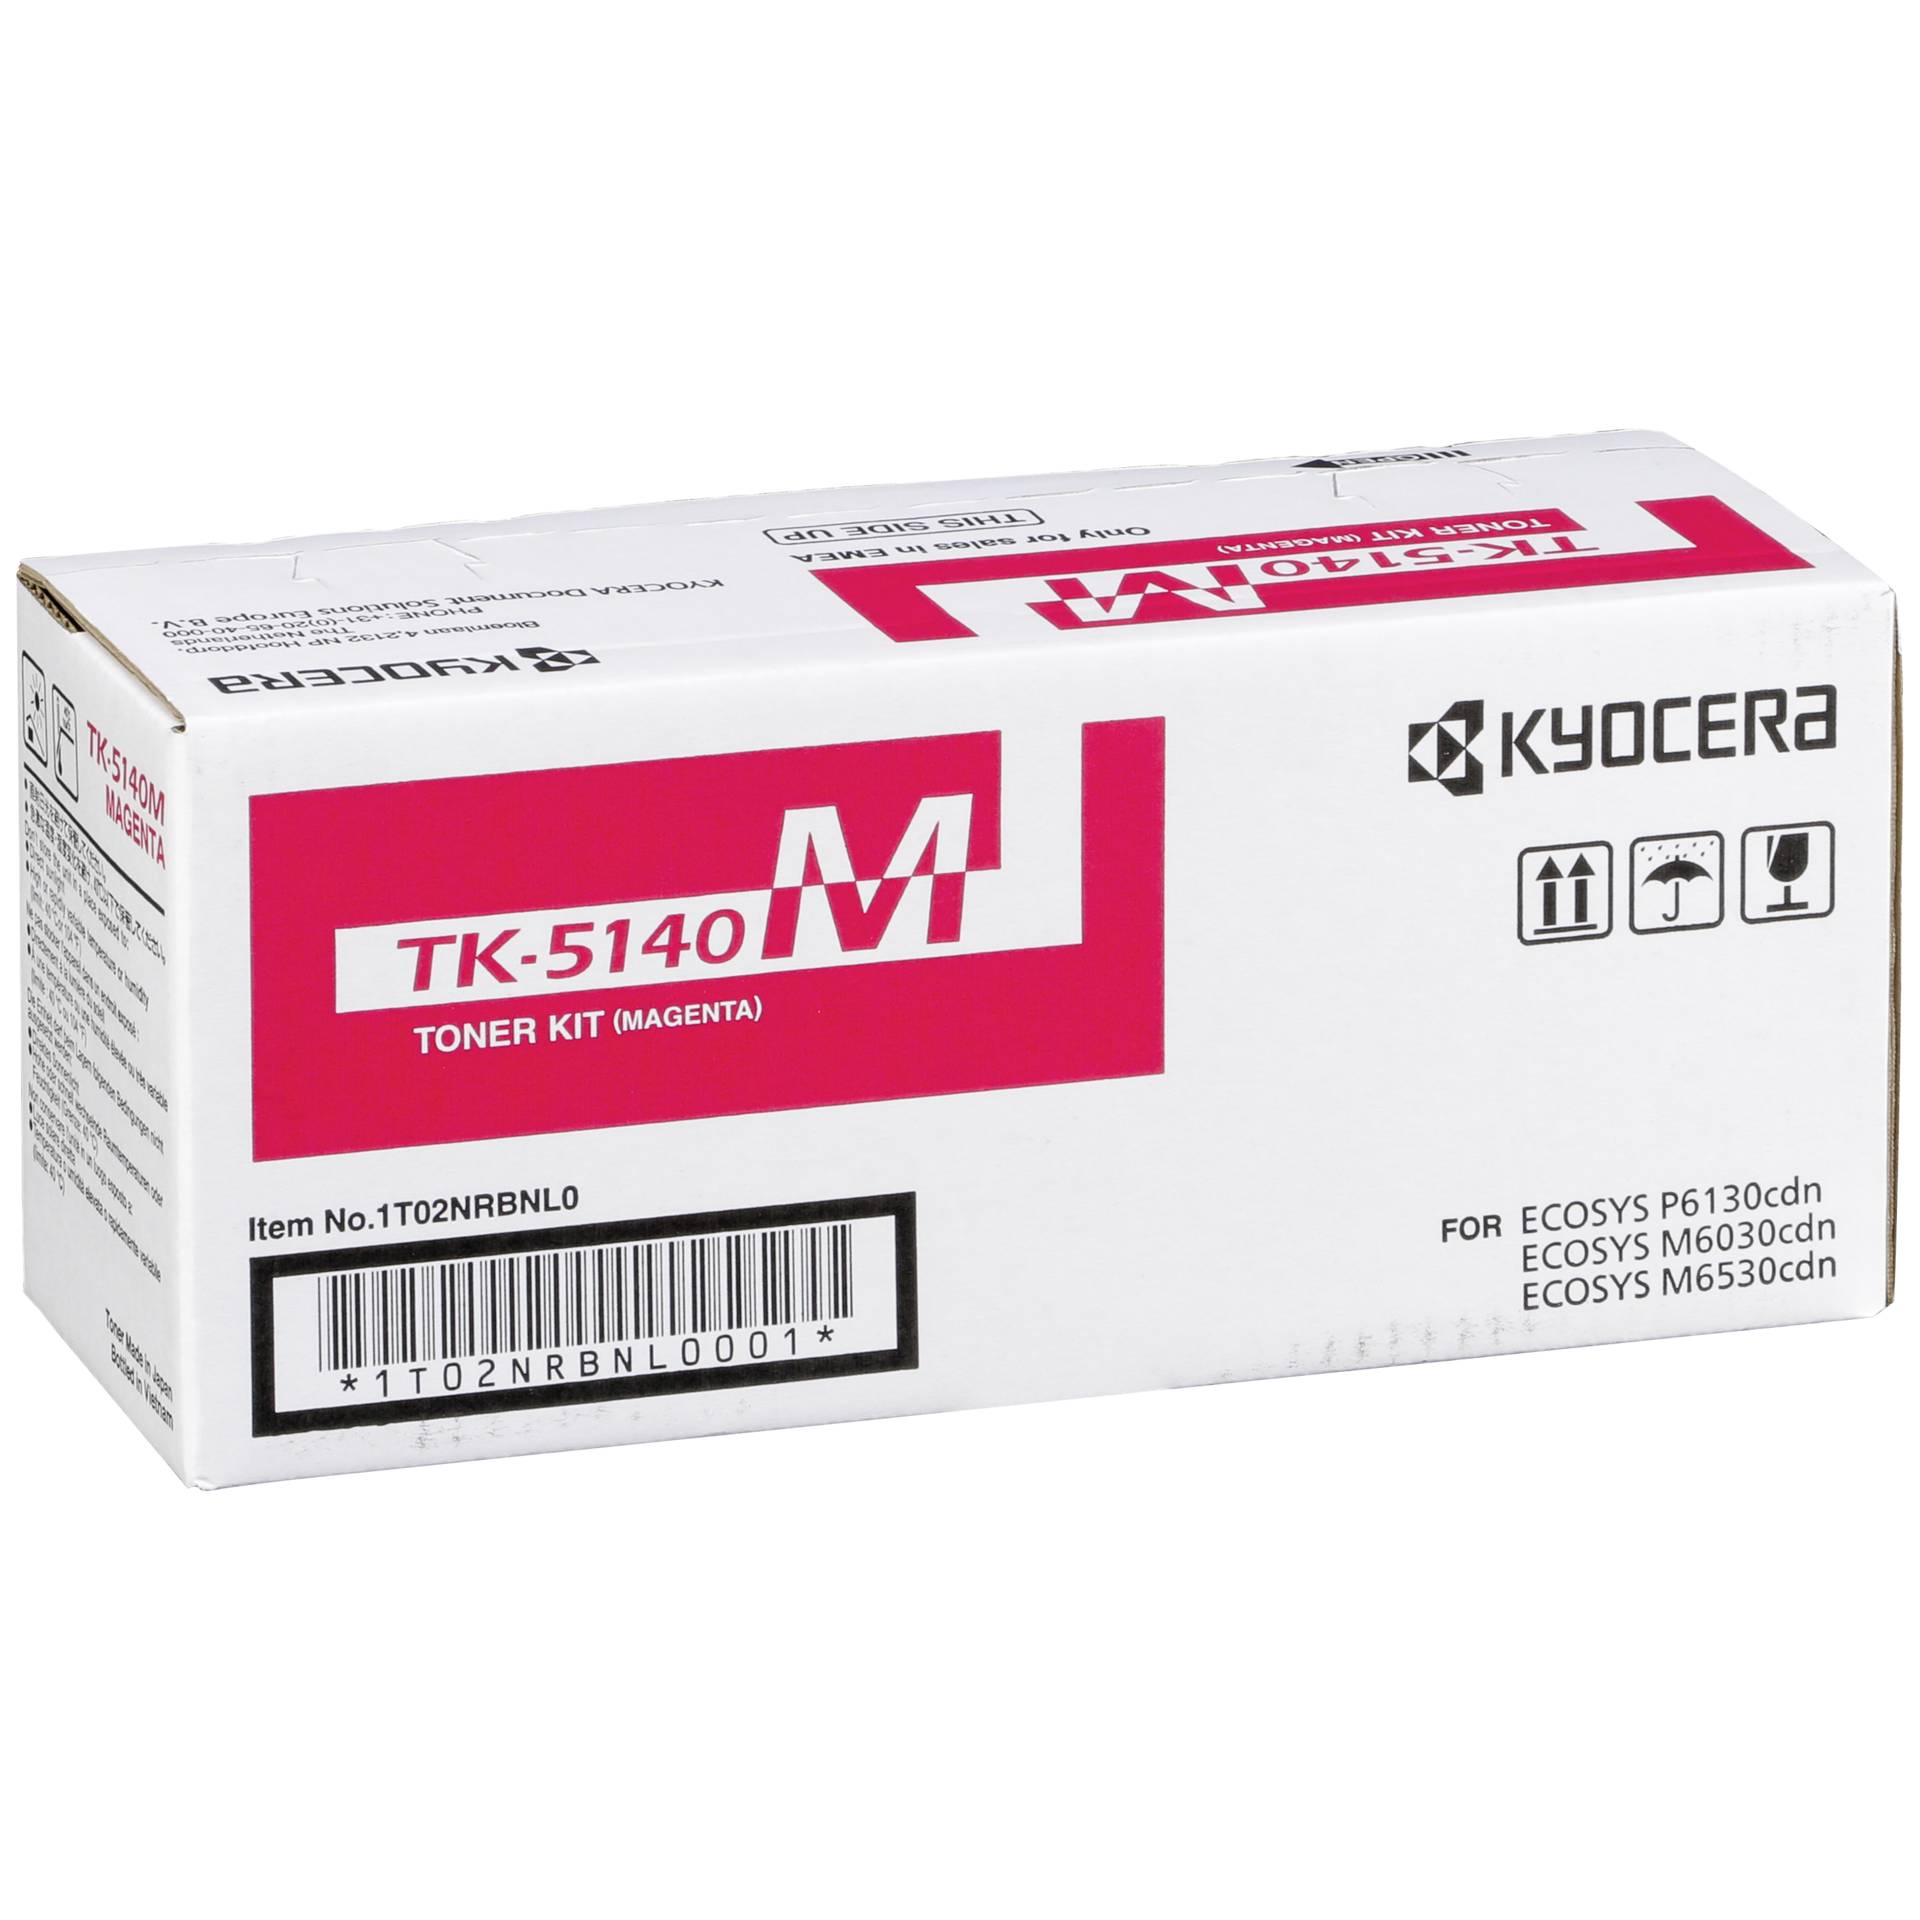 Kyocera Toner TK-5140 magenta